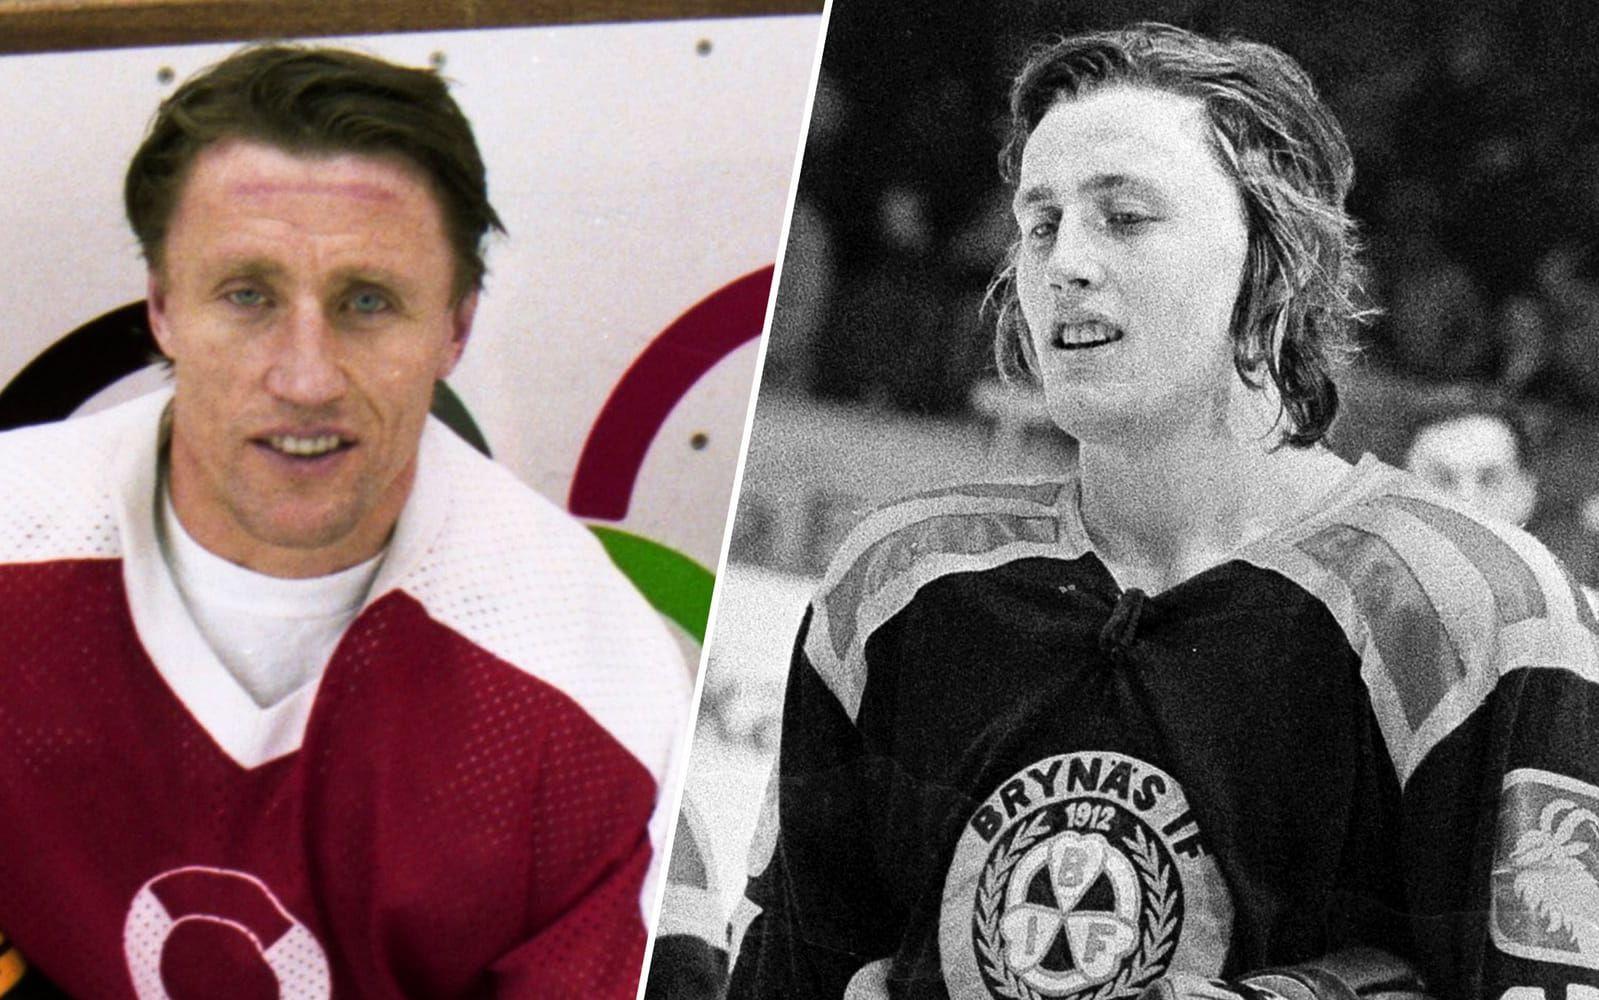 Torontolegendaren Börje Salming. Bilden till vänster är hämtad från OS-uppladdningen 1992, den till höger är från 1973. Foto: Bildbyrån